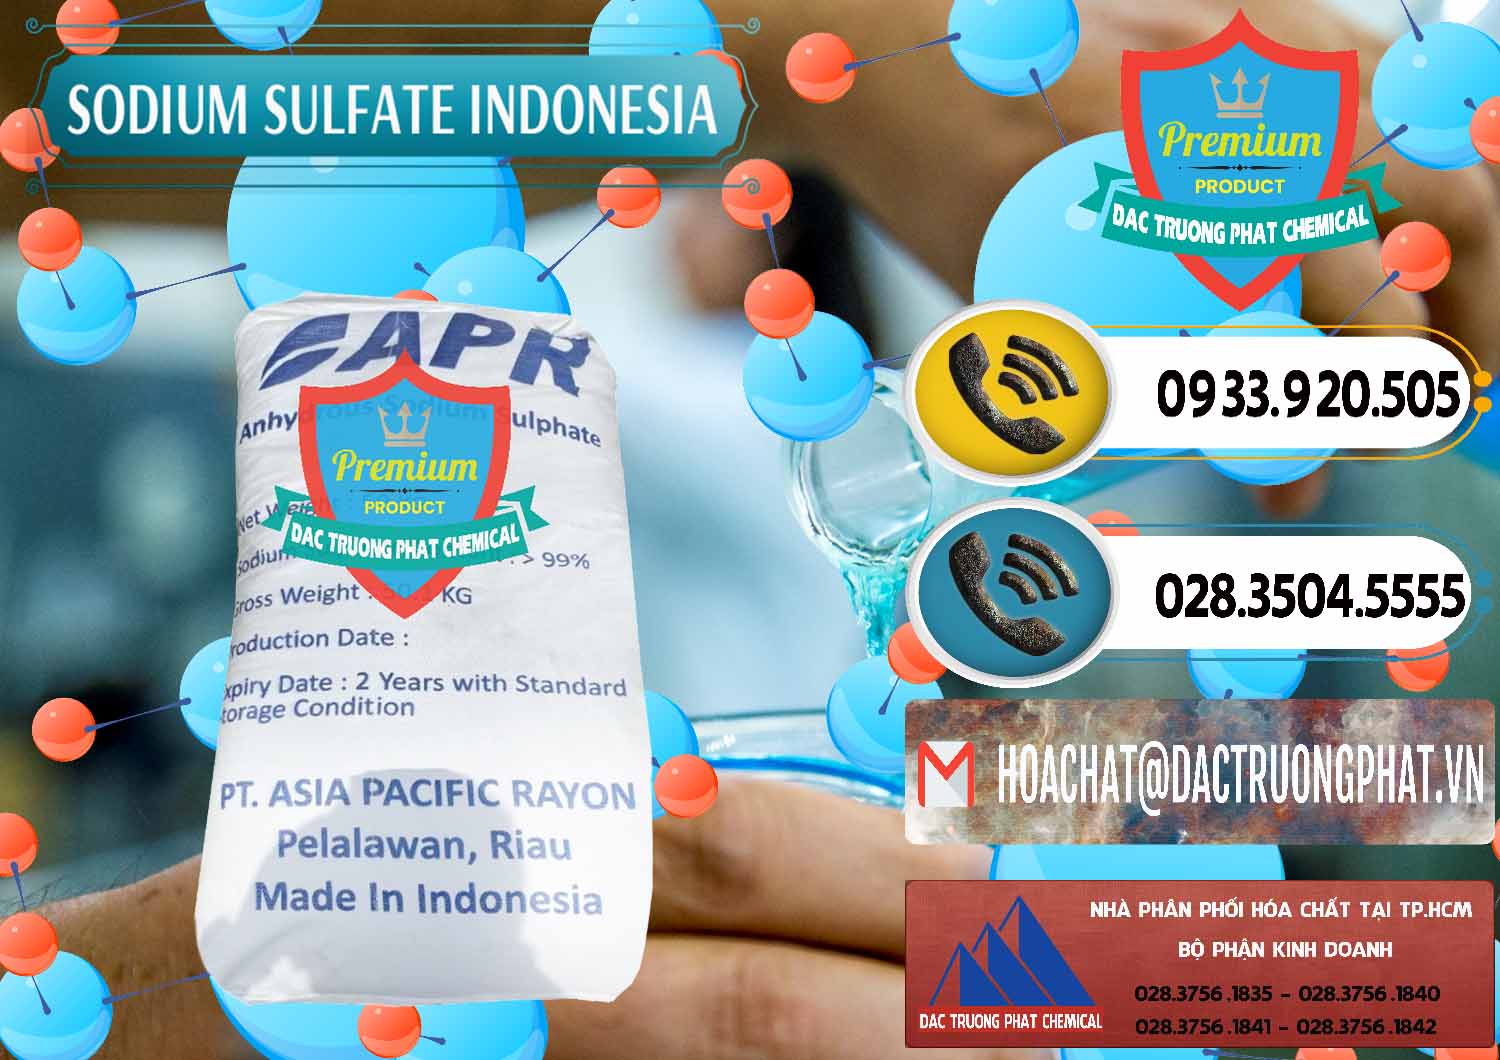 Cty kinh doanh _ bán Sodium Sulphate - Muối Sunfat Na2SO4 APR Indonesia - 0460 - Nơi phân phối và cung cấp hóa chất tại TP.HCM - hoachatdetnhuom.vn